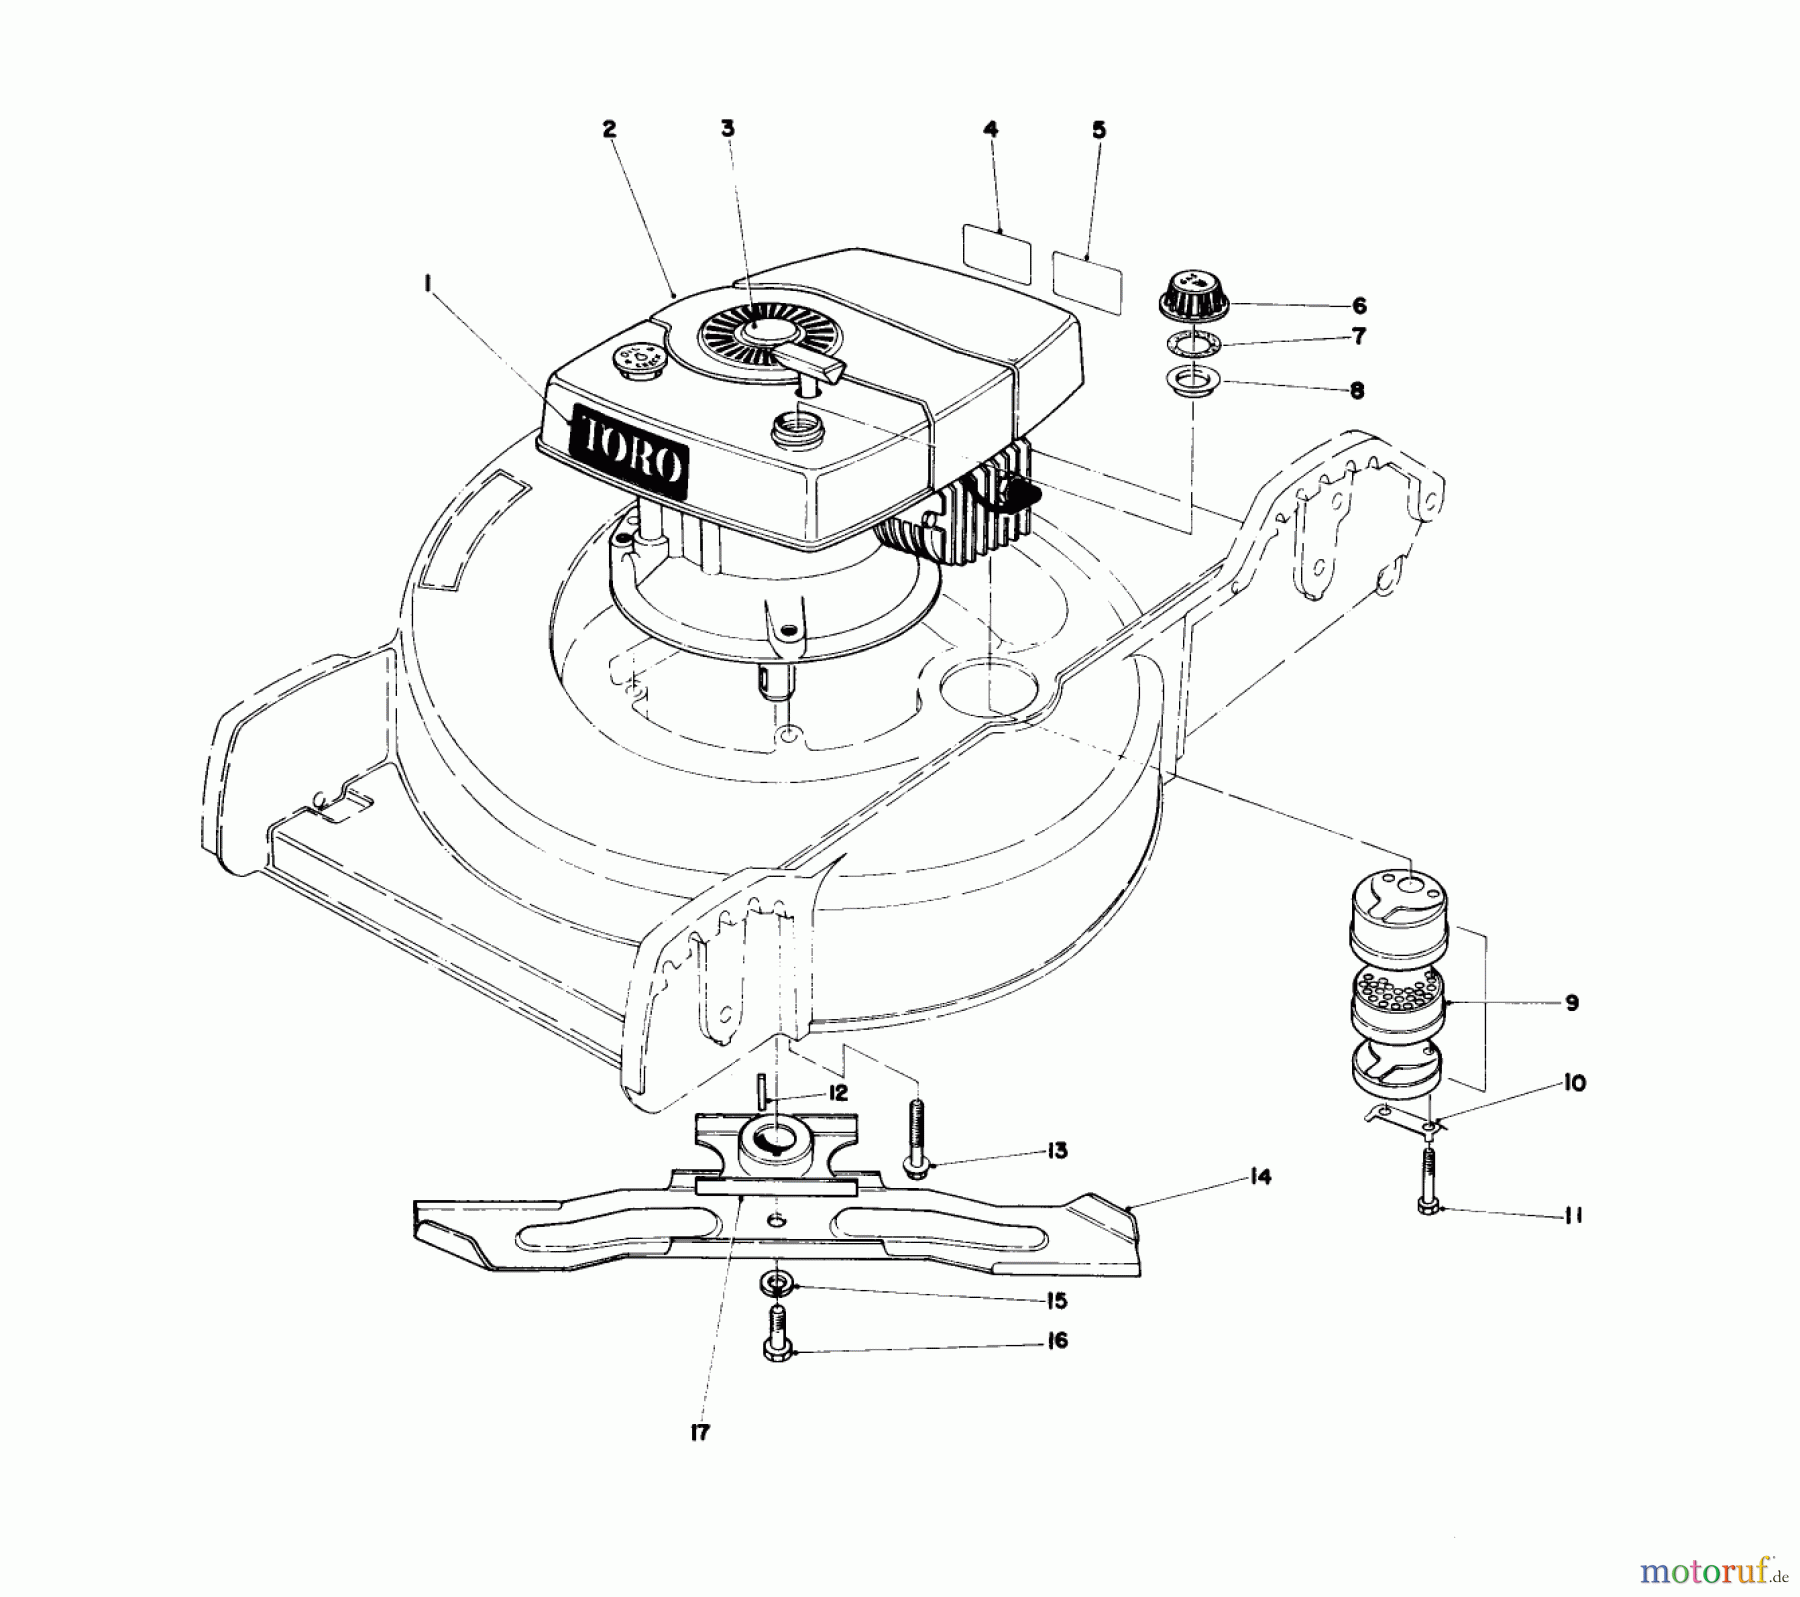  Toro Neu Mowers, Walk-Behind Seite 1 20758 - Toro Lawnmower, 1980 (0000001-0999999) ENGINE ASSEMBLY